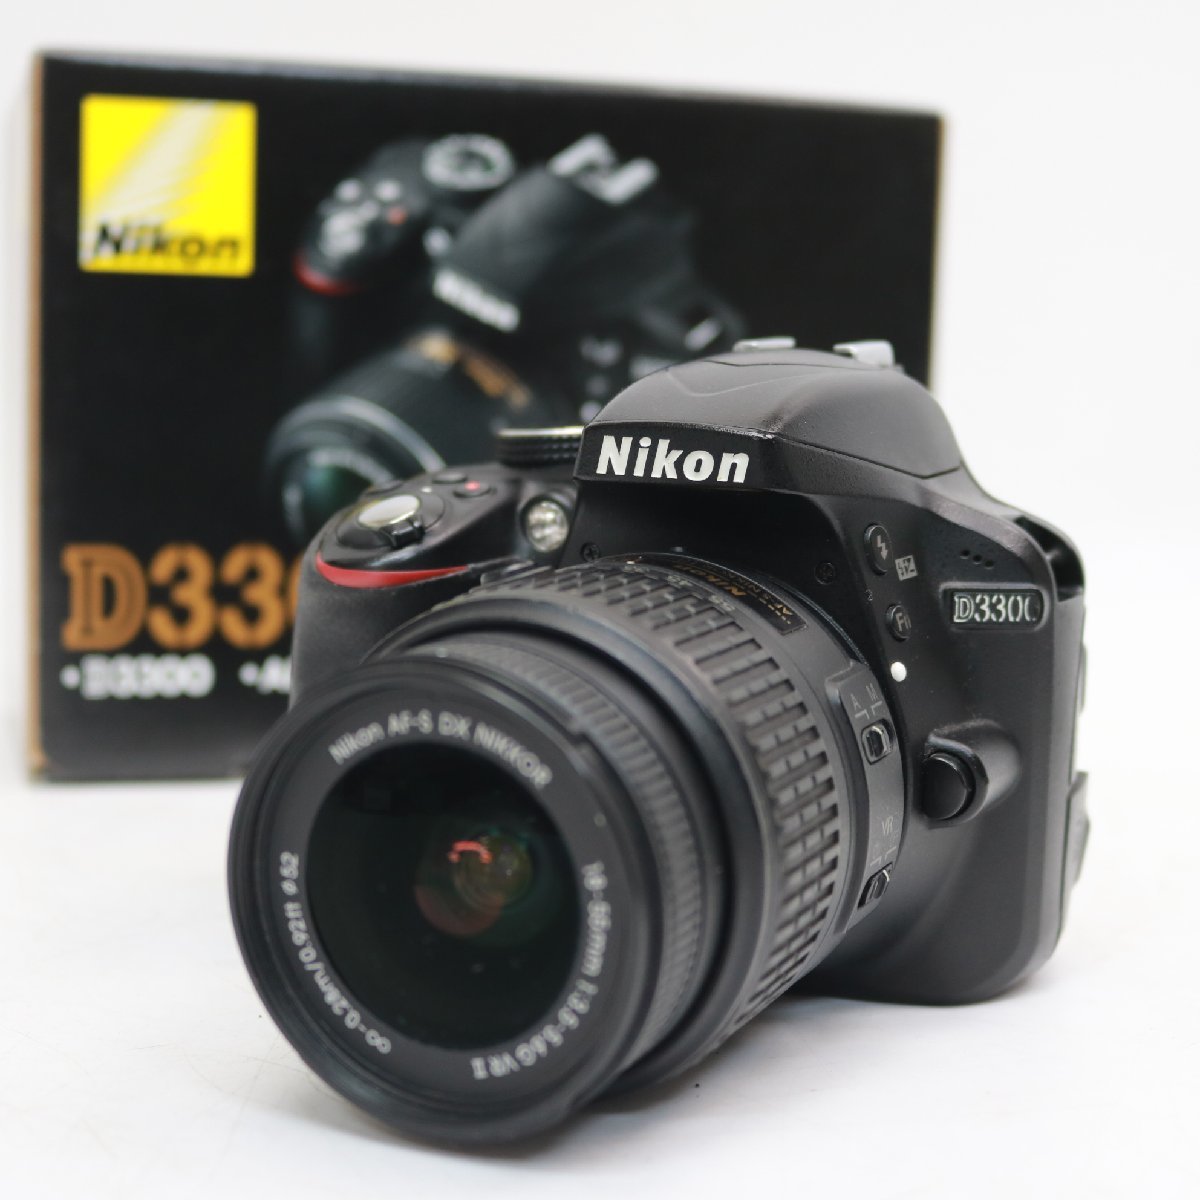 東京都品川区にて ニコン  D3300 デジタル一眼レフカメラ AF-S DX NIKKOR 18-55mm f3.5-5.6G VR ⅡKit  を出張買取させて頂きました。